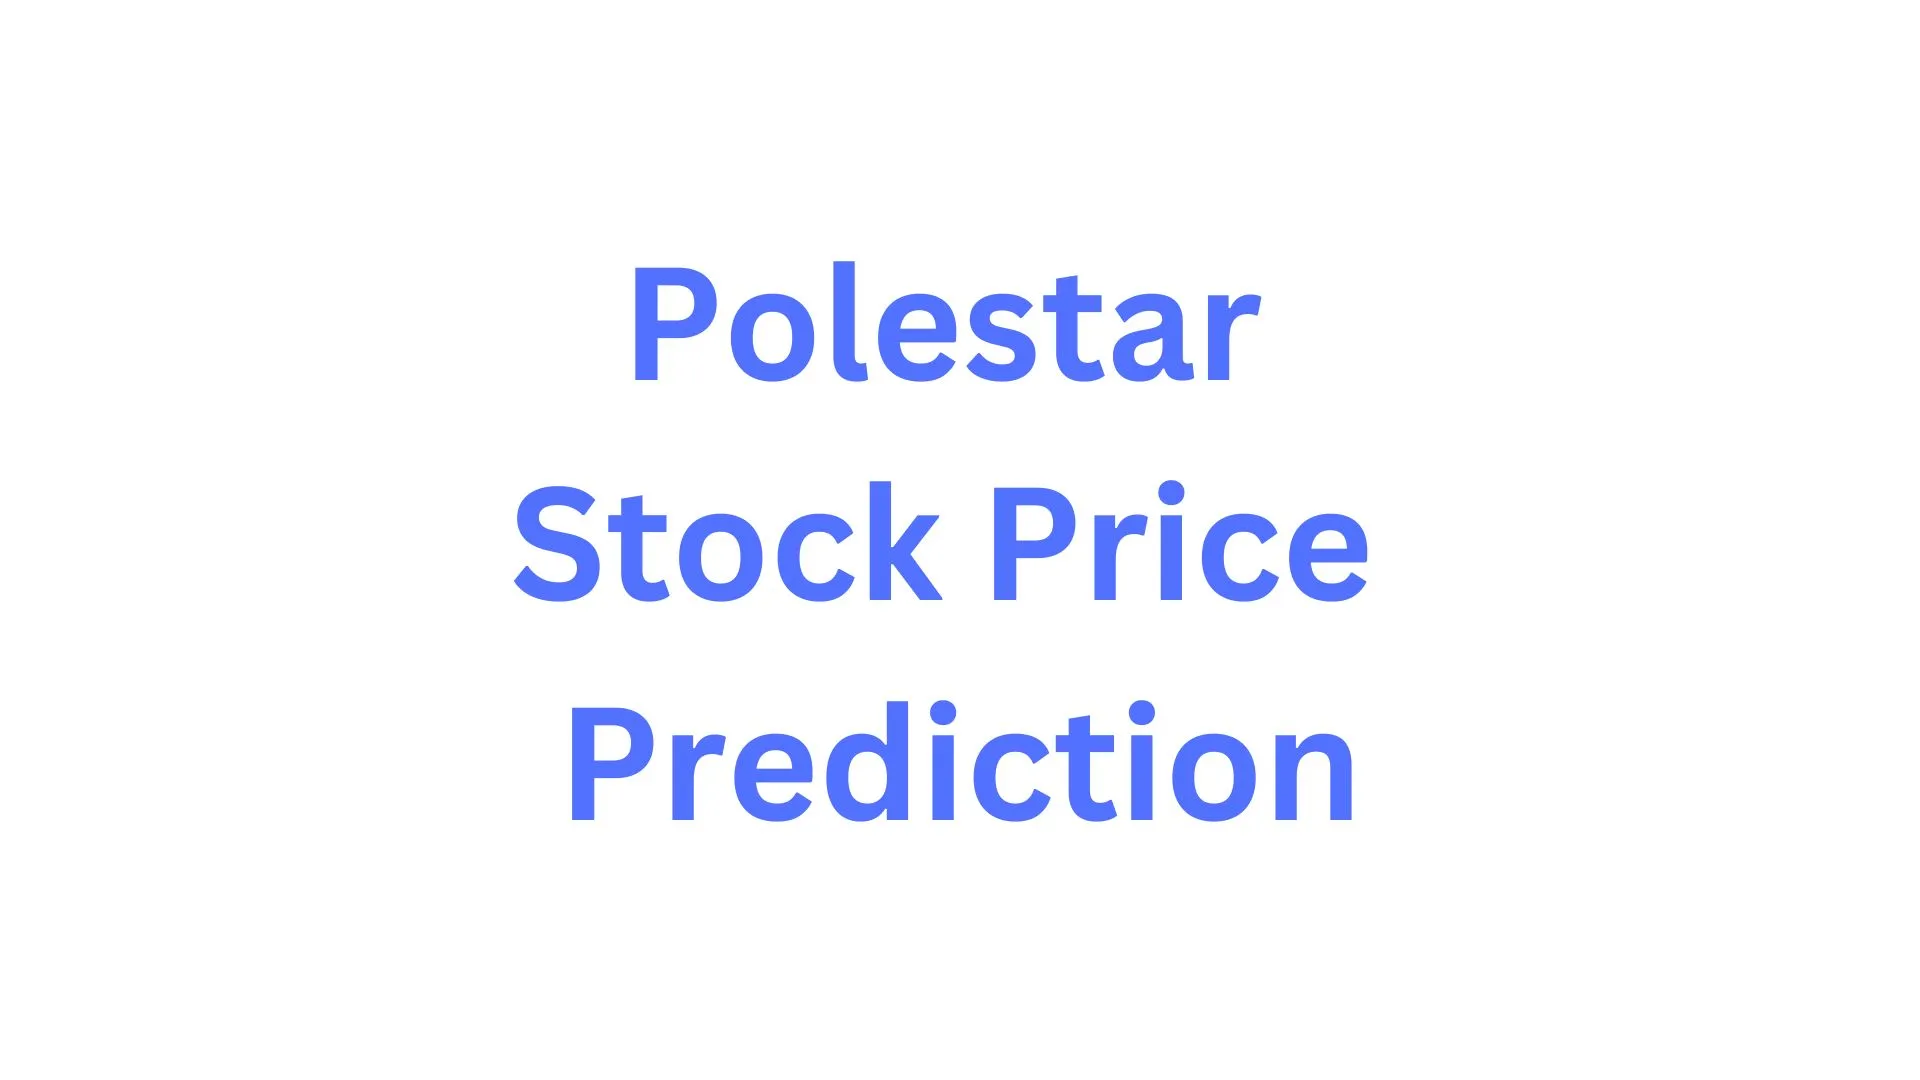 Polestar Stock Price Prediction